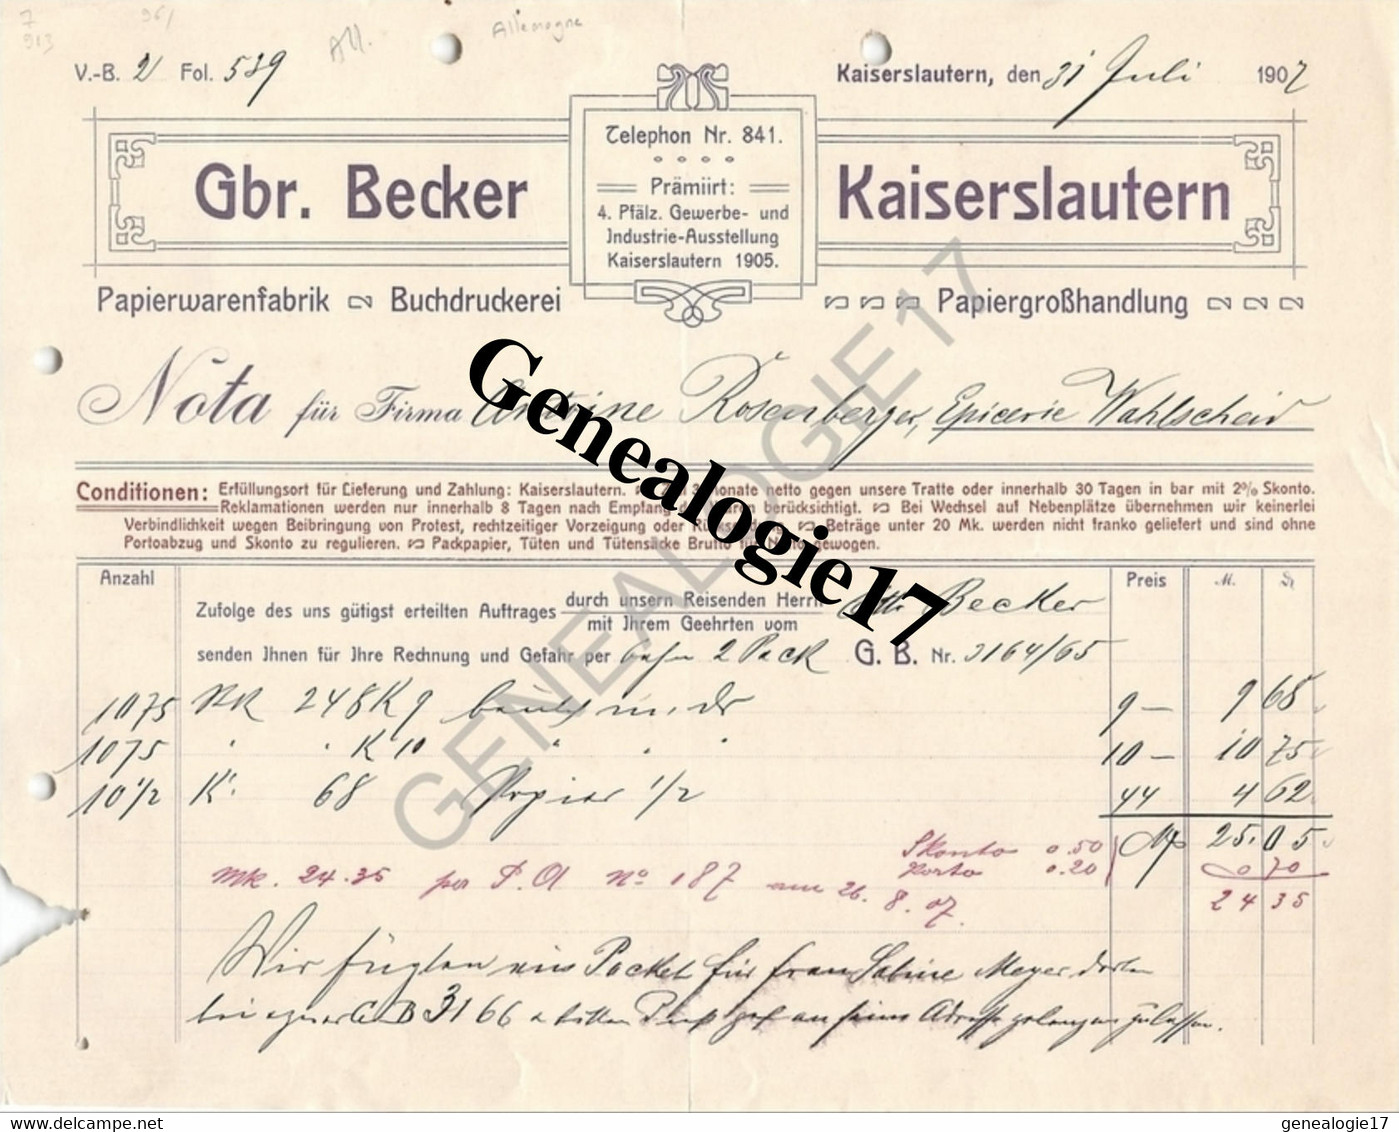 96 0692 ALLEMAGNE KAISERLAUTERN Rhenanie Palatinat 1907 Papier Warenfabrik GBR. BECKER Buchdruckerei - Stamperia & Cartoleria